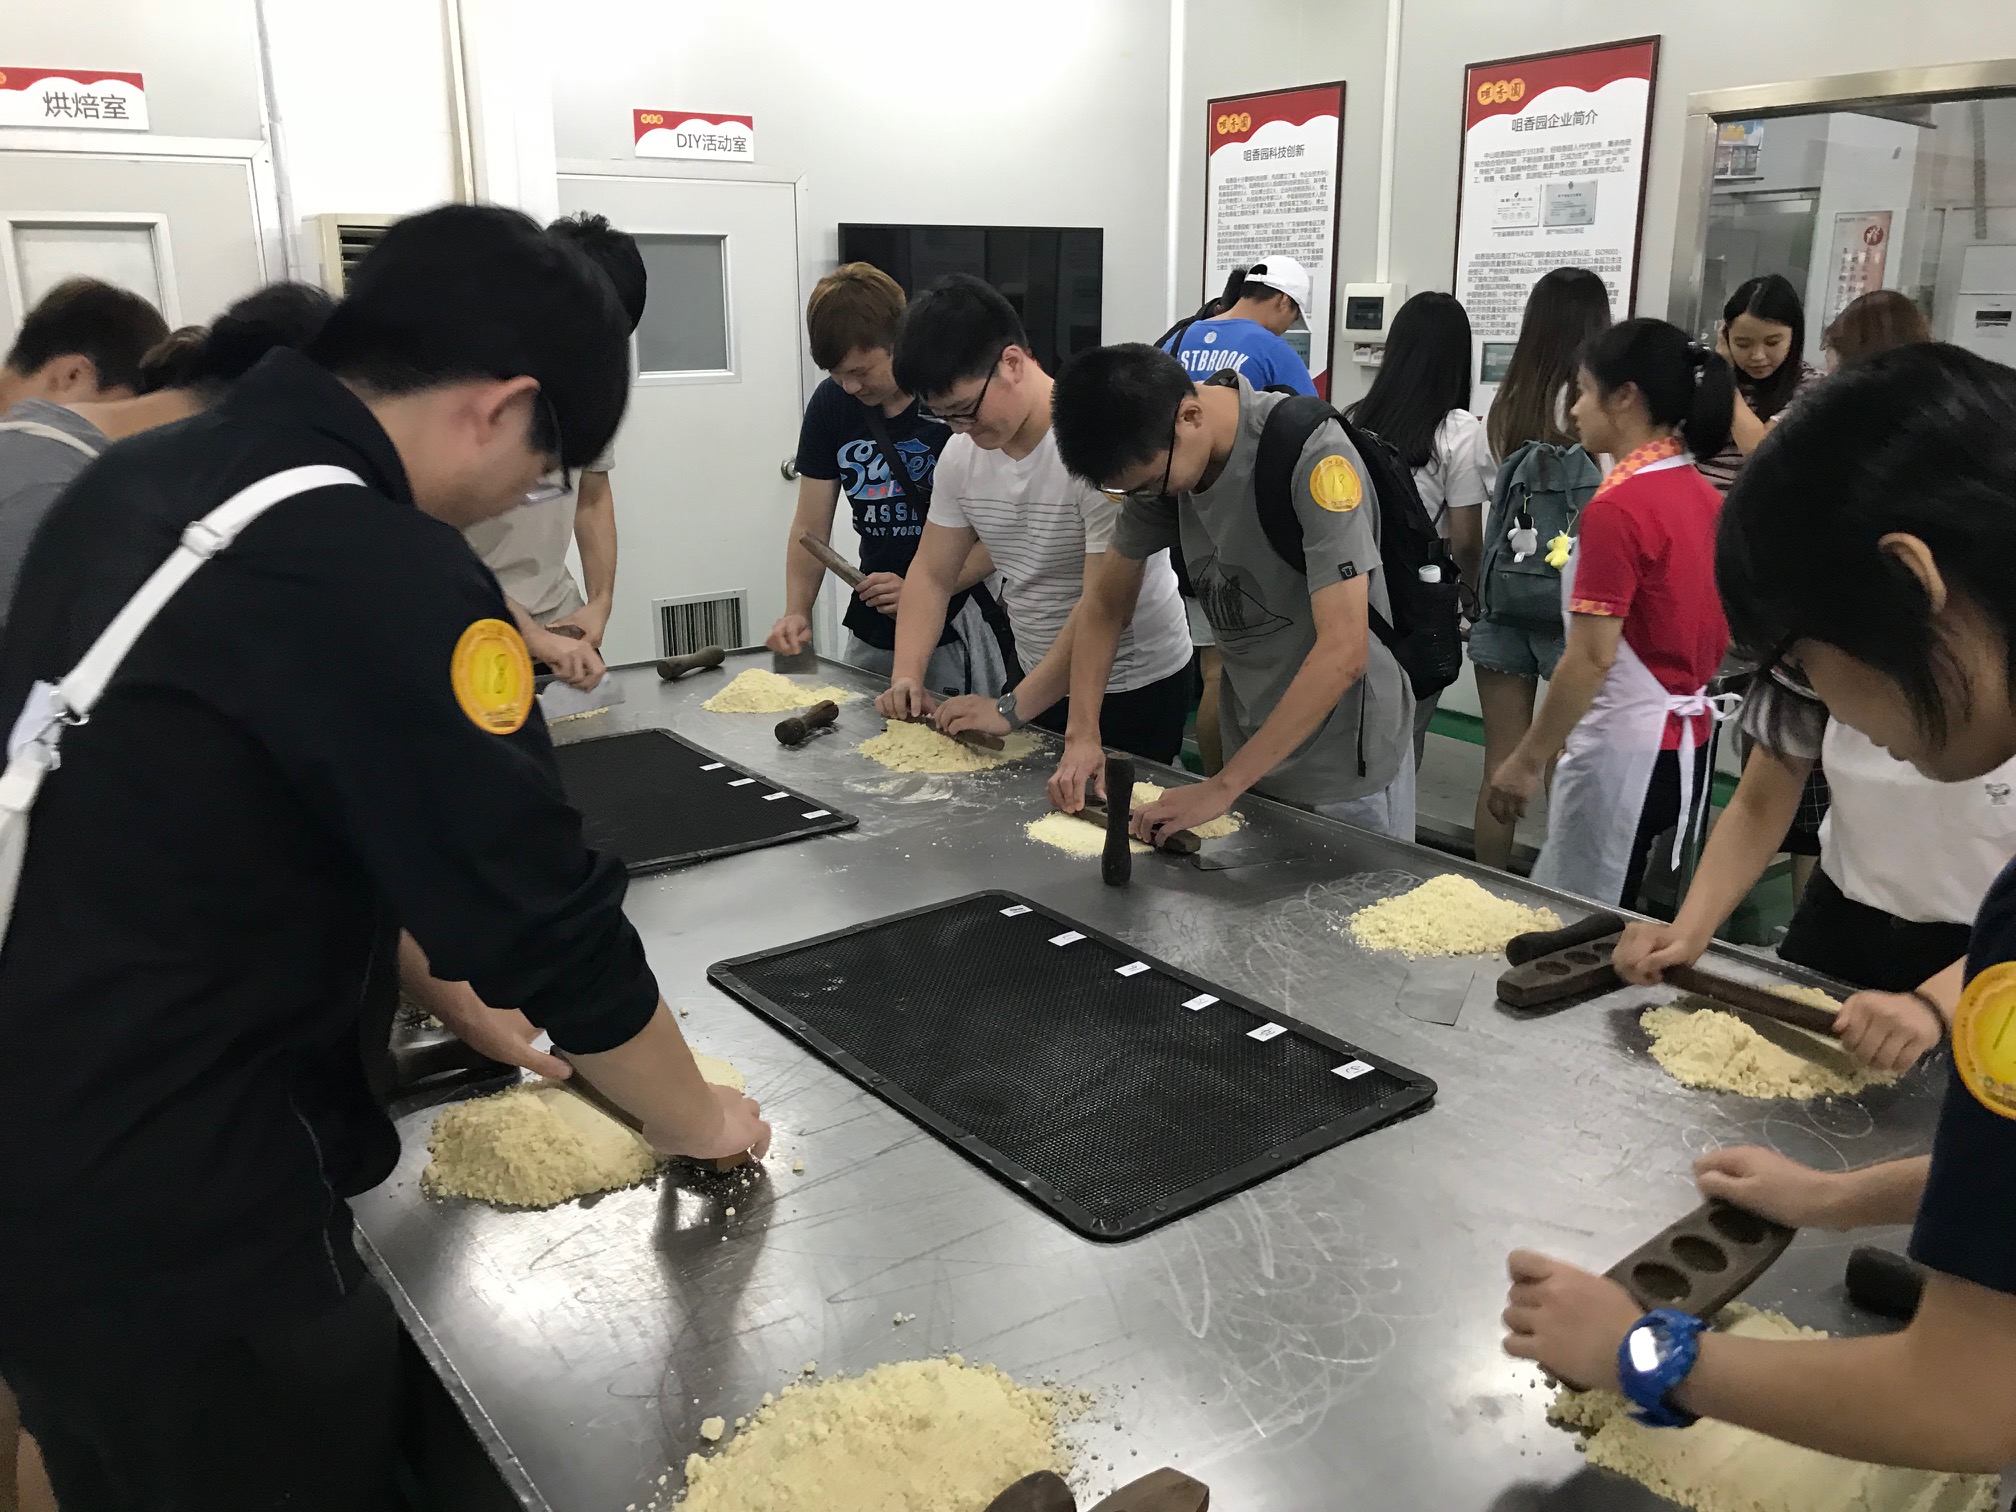 食品廠安排同學親自製作杏仁餅，讓他們了解食品質素及安全之間如何取得平衡。